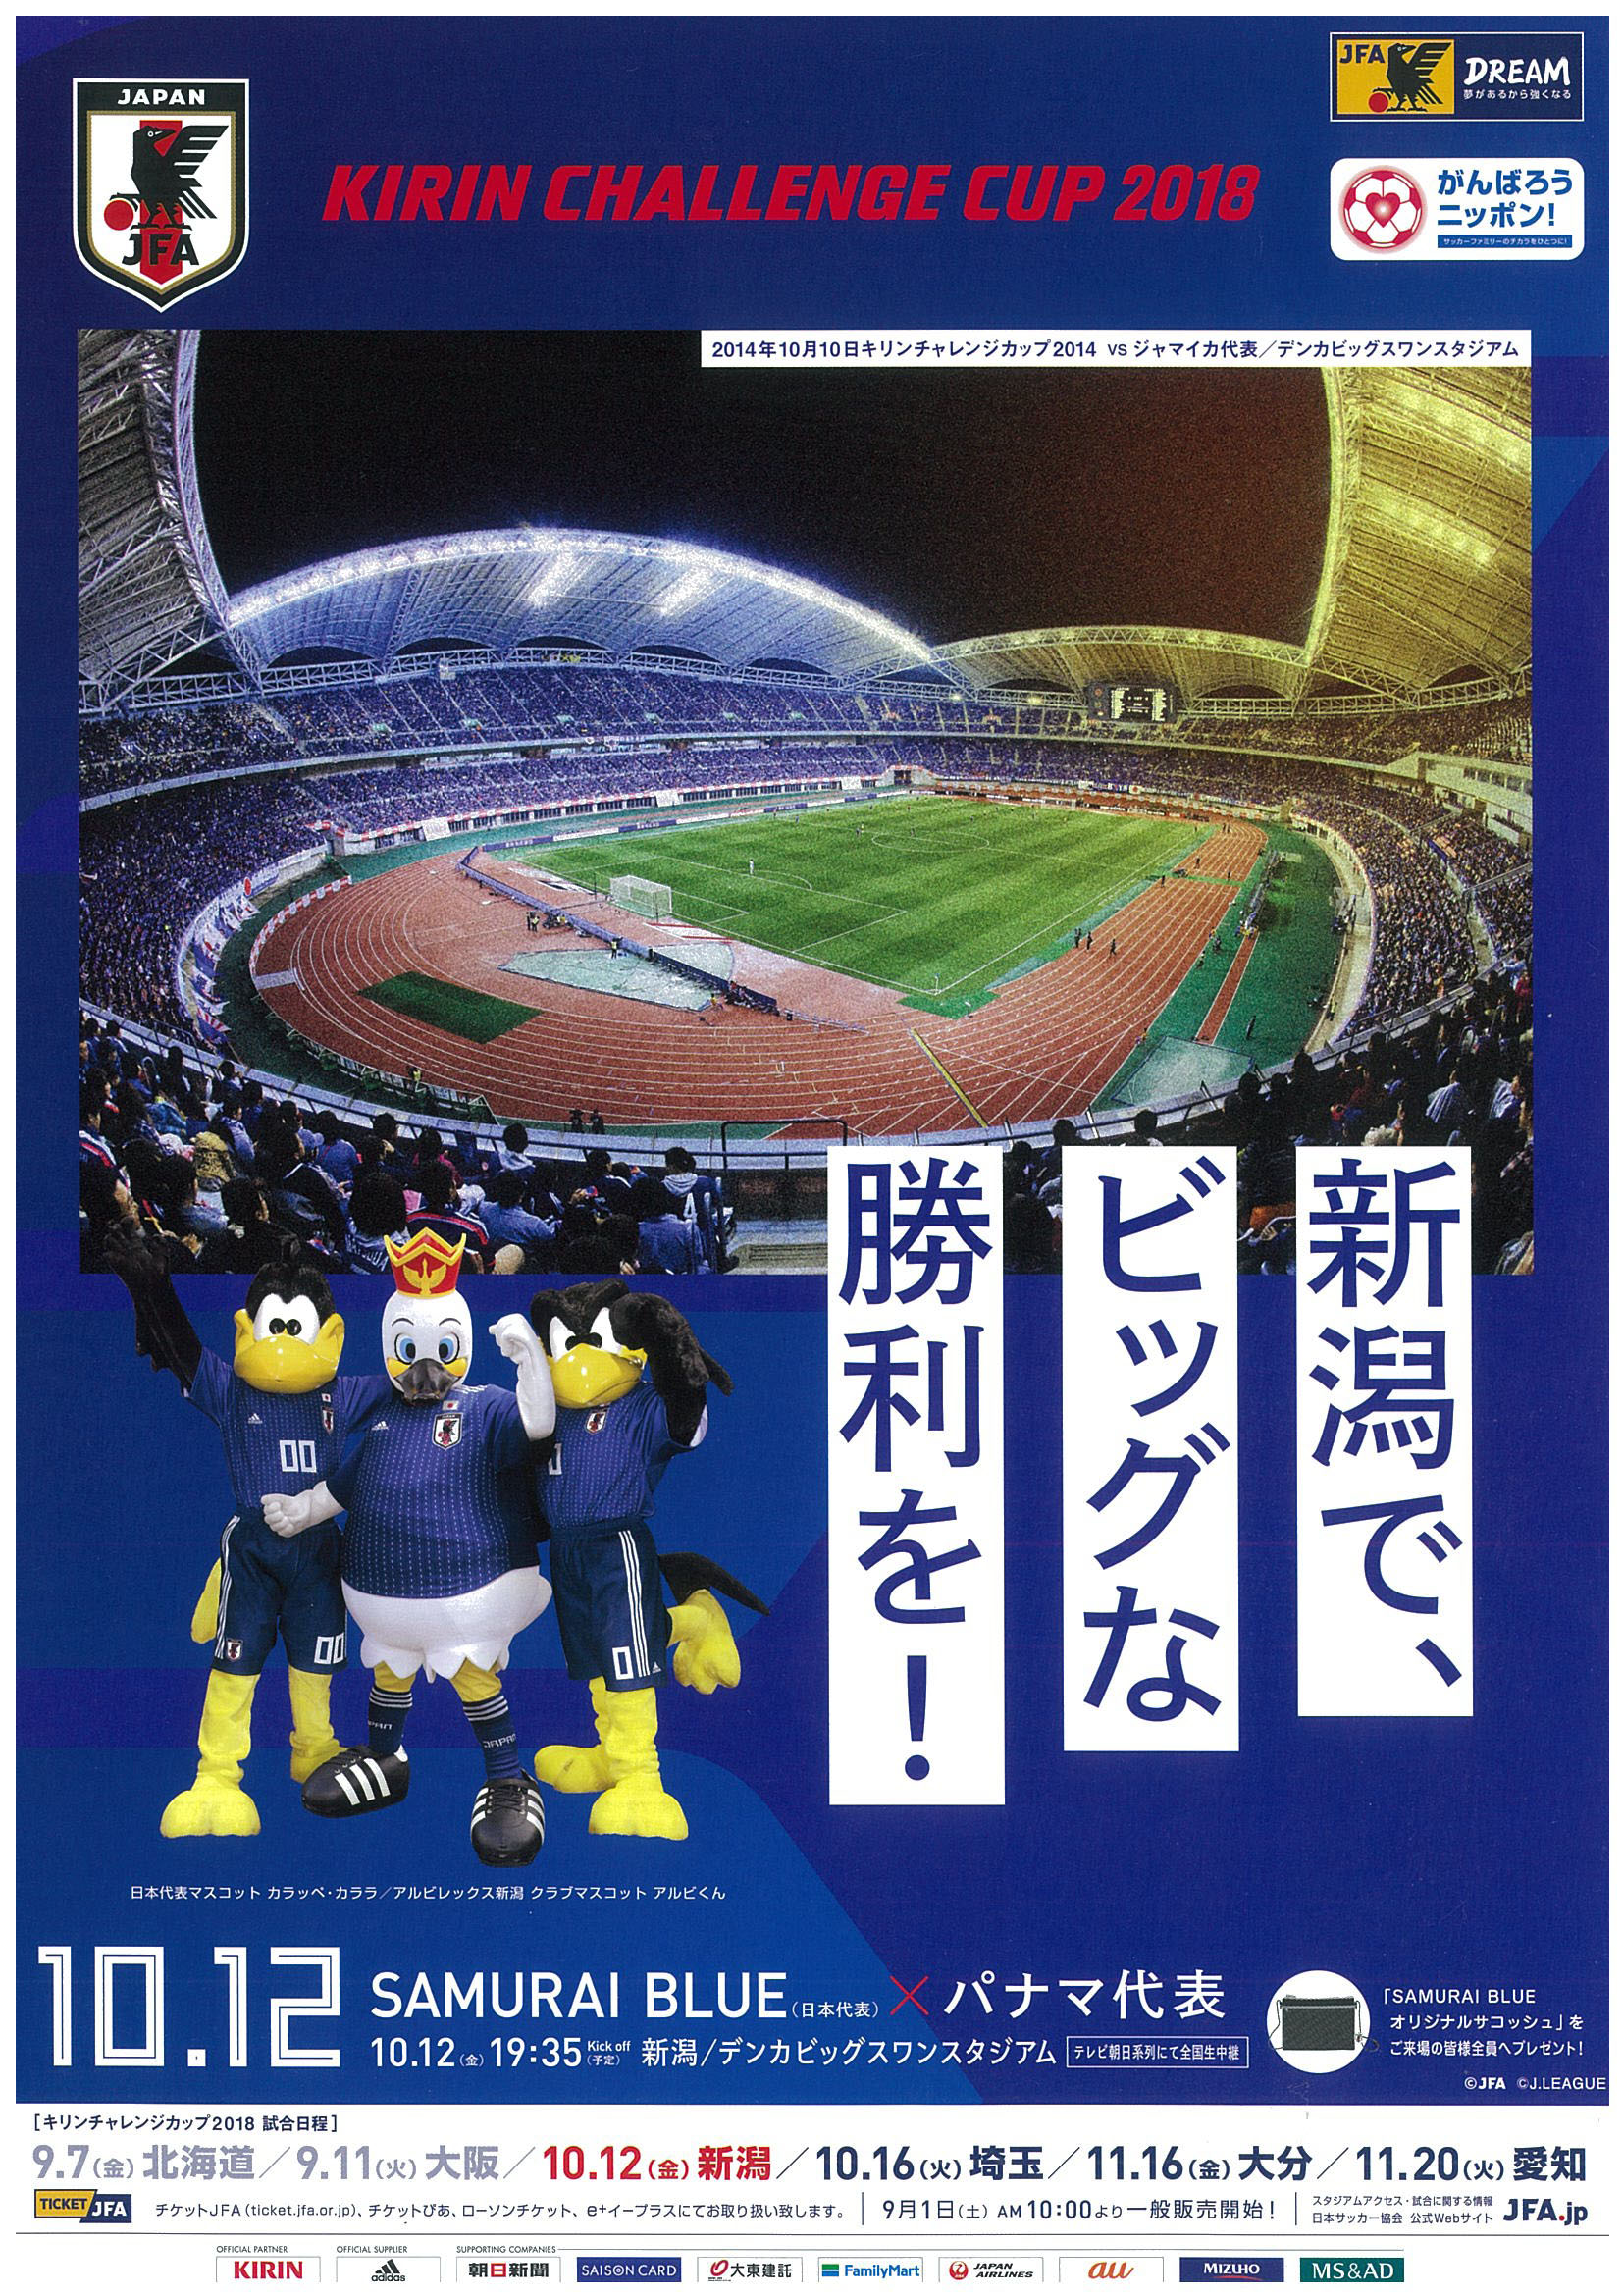 10 12キリンチャレンジカップ18 Sumrai Blue 日本代表 パナマ代表 チケット 一般販売開始のお知らせ ビッグスワンからのお知らせ デンカビッグスワンスタジアム